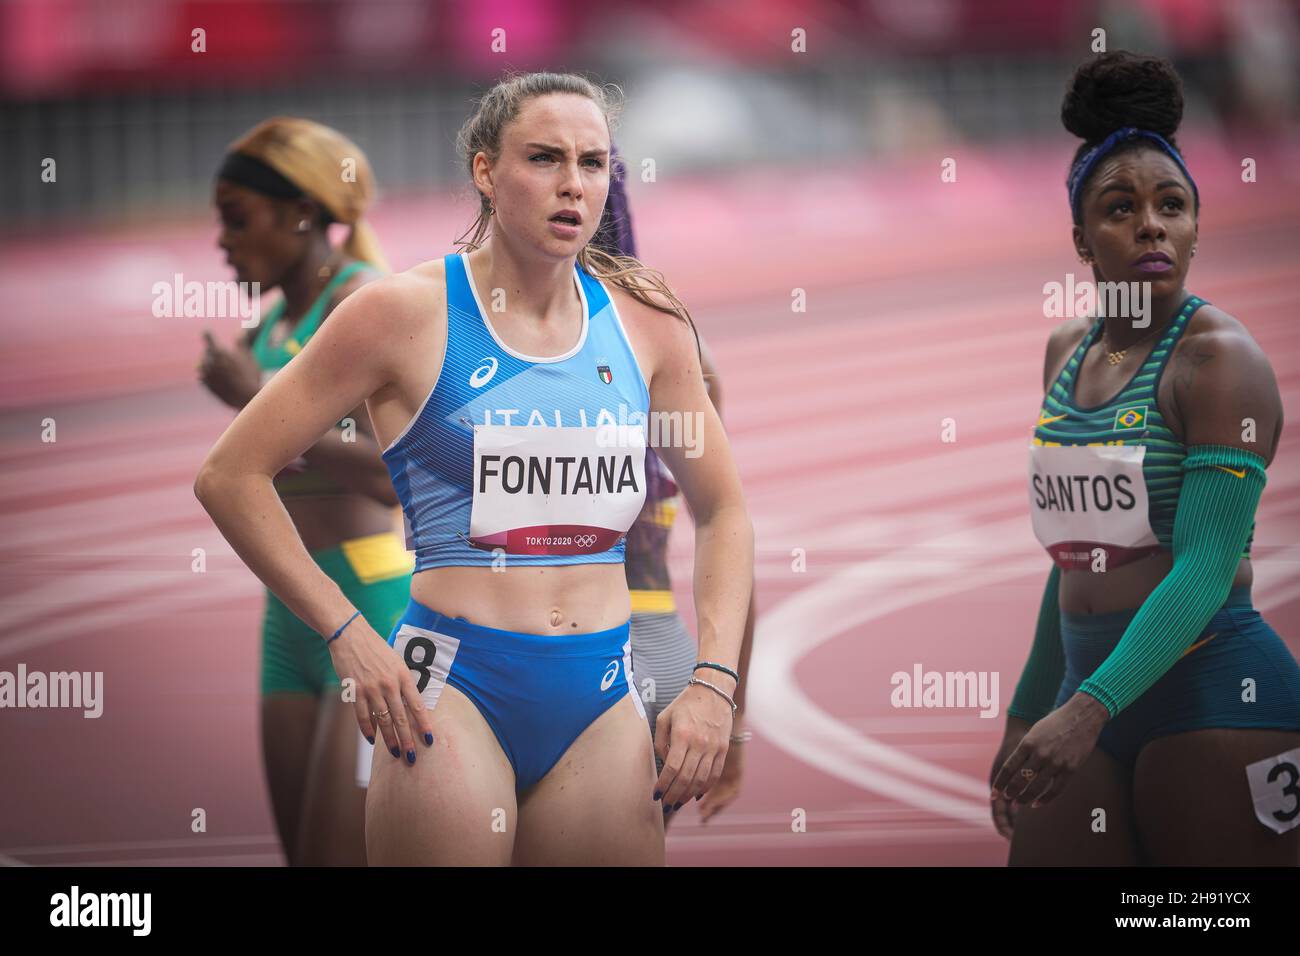 Vittoria Fontana concourant dans les 100 mètres des Jeux Olympiques de  Tokyo en 2020 Photo Stock - Alamy